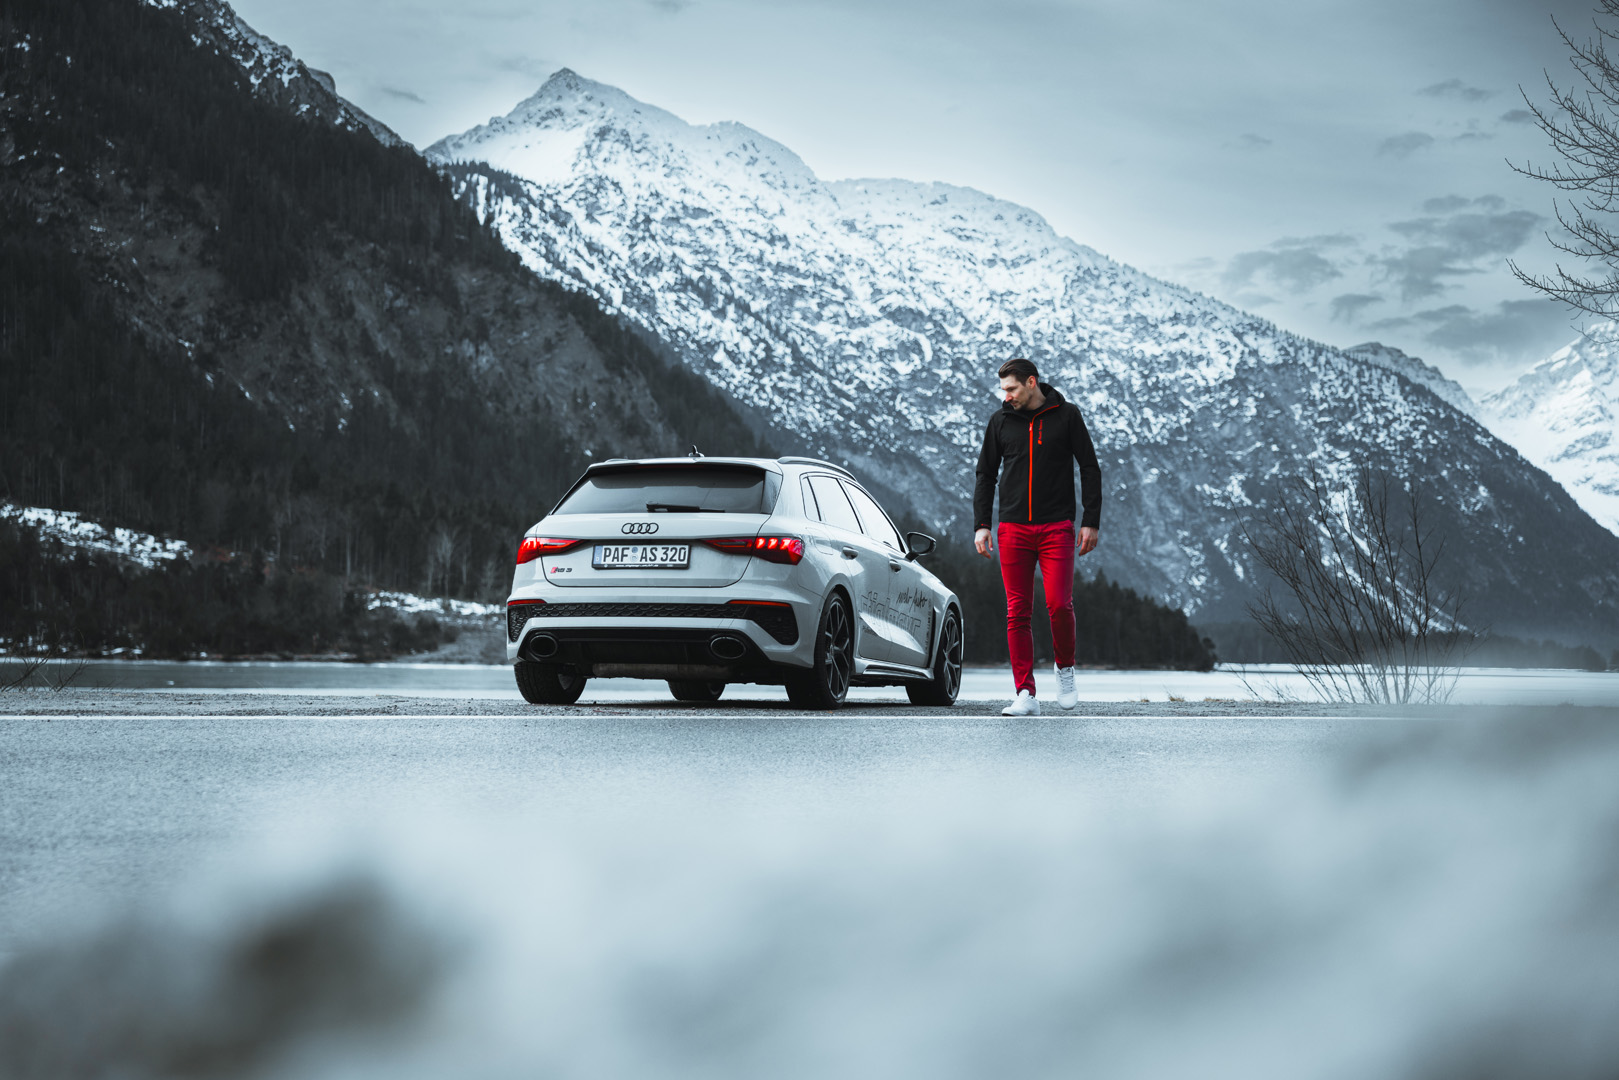 Nico Habich am See in Österreich mit einem Audi RS3 fotografiert für Socialmedia Content